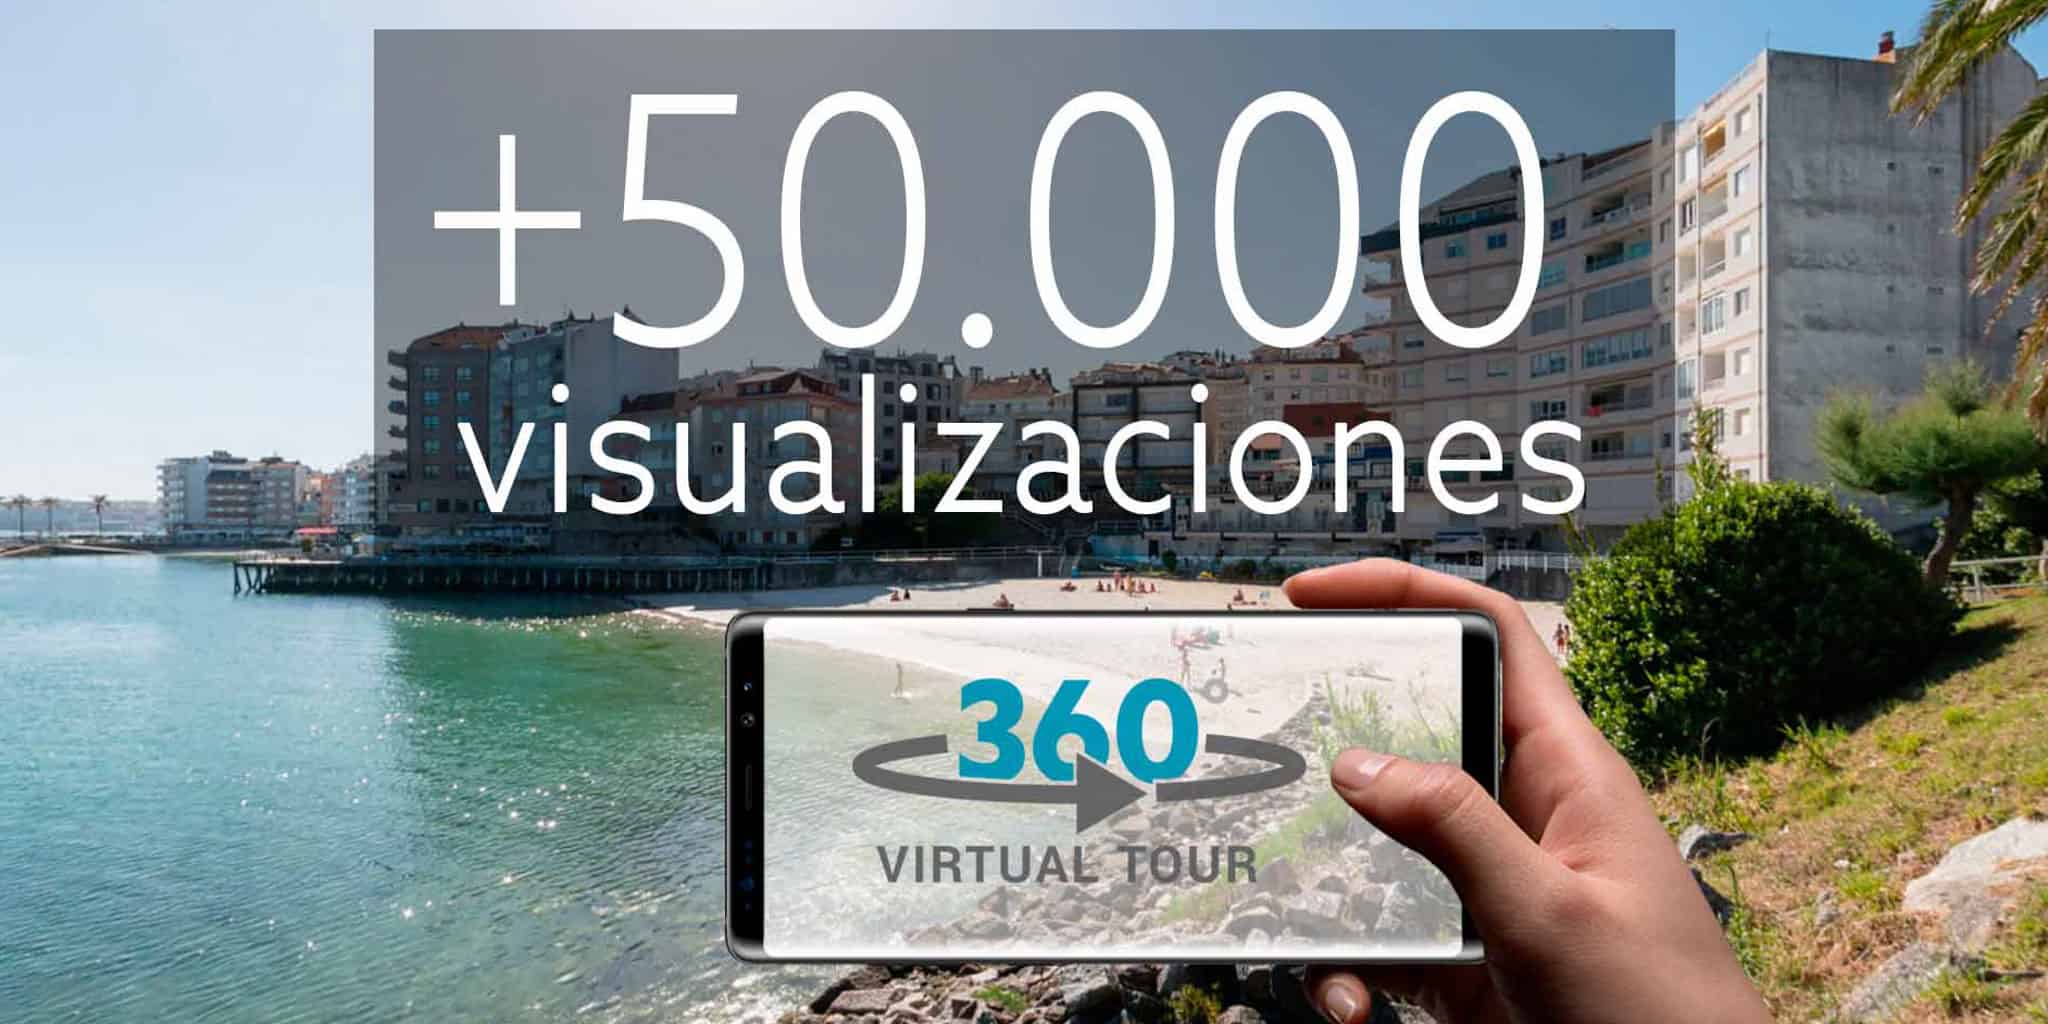 Fotografias 360 con +50.000 visualizaciones. Aumenta el tráfico de visitantes onine en tu negocio.